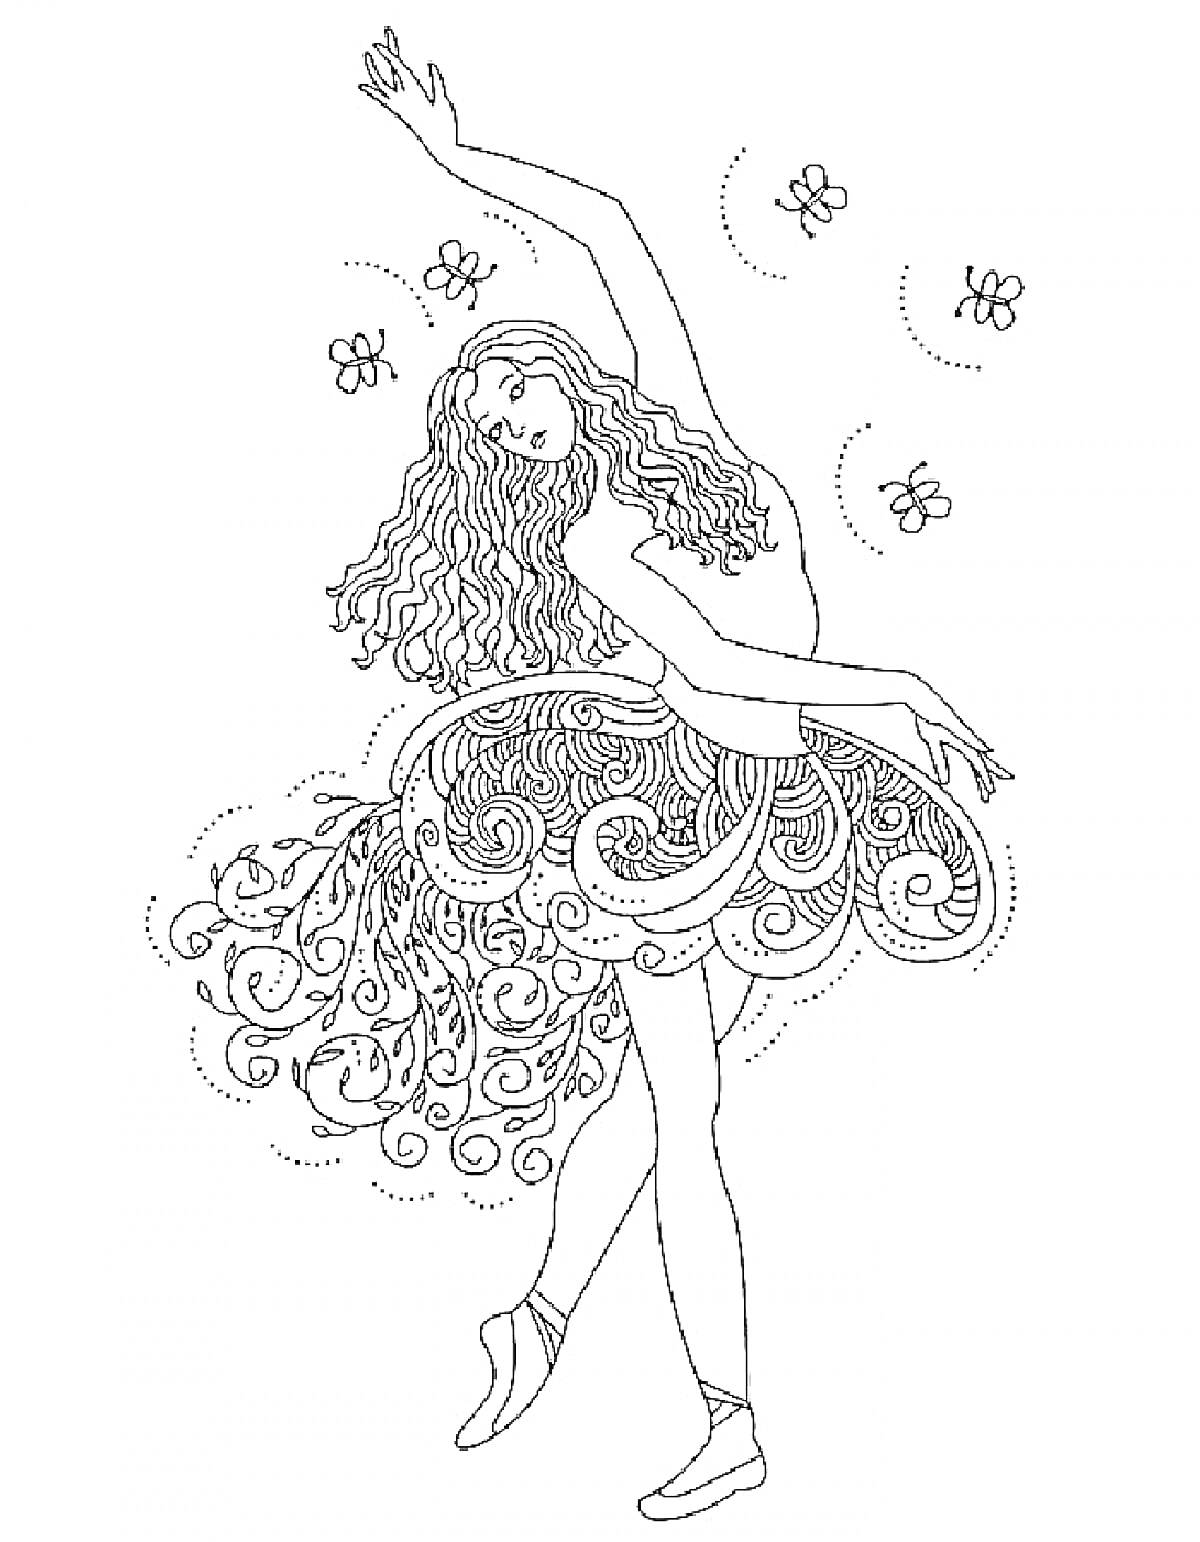 Балерина с длинными волосами, фигурные узоры на платье, парящие бабочки.